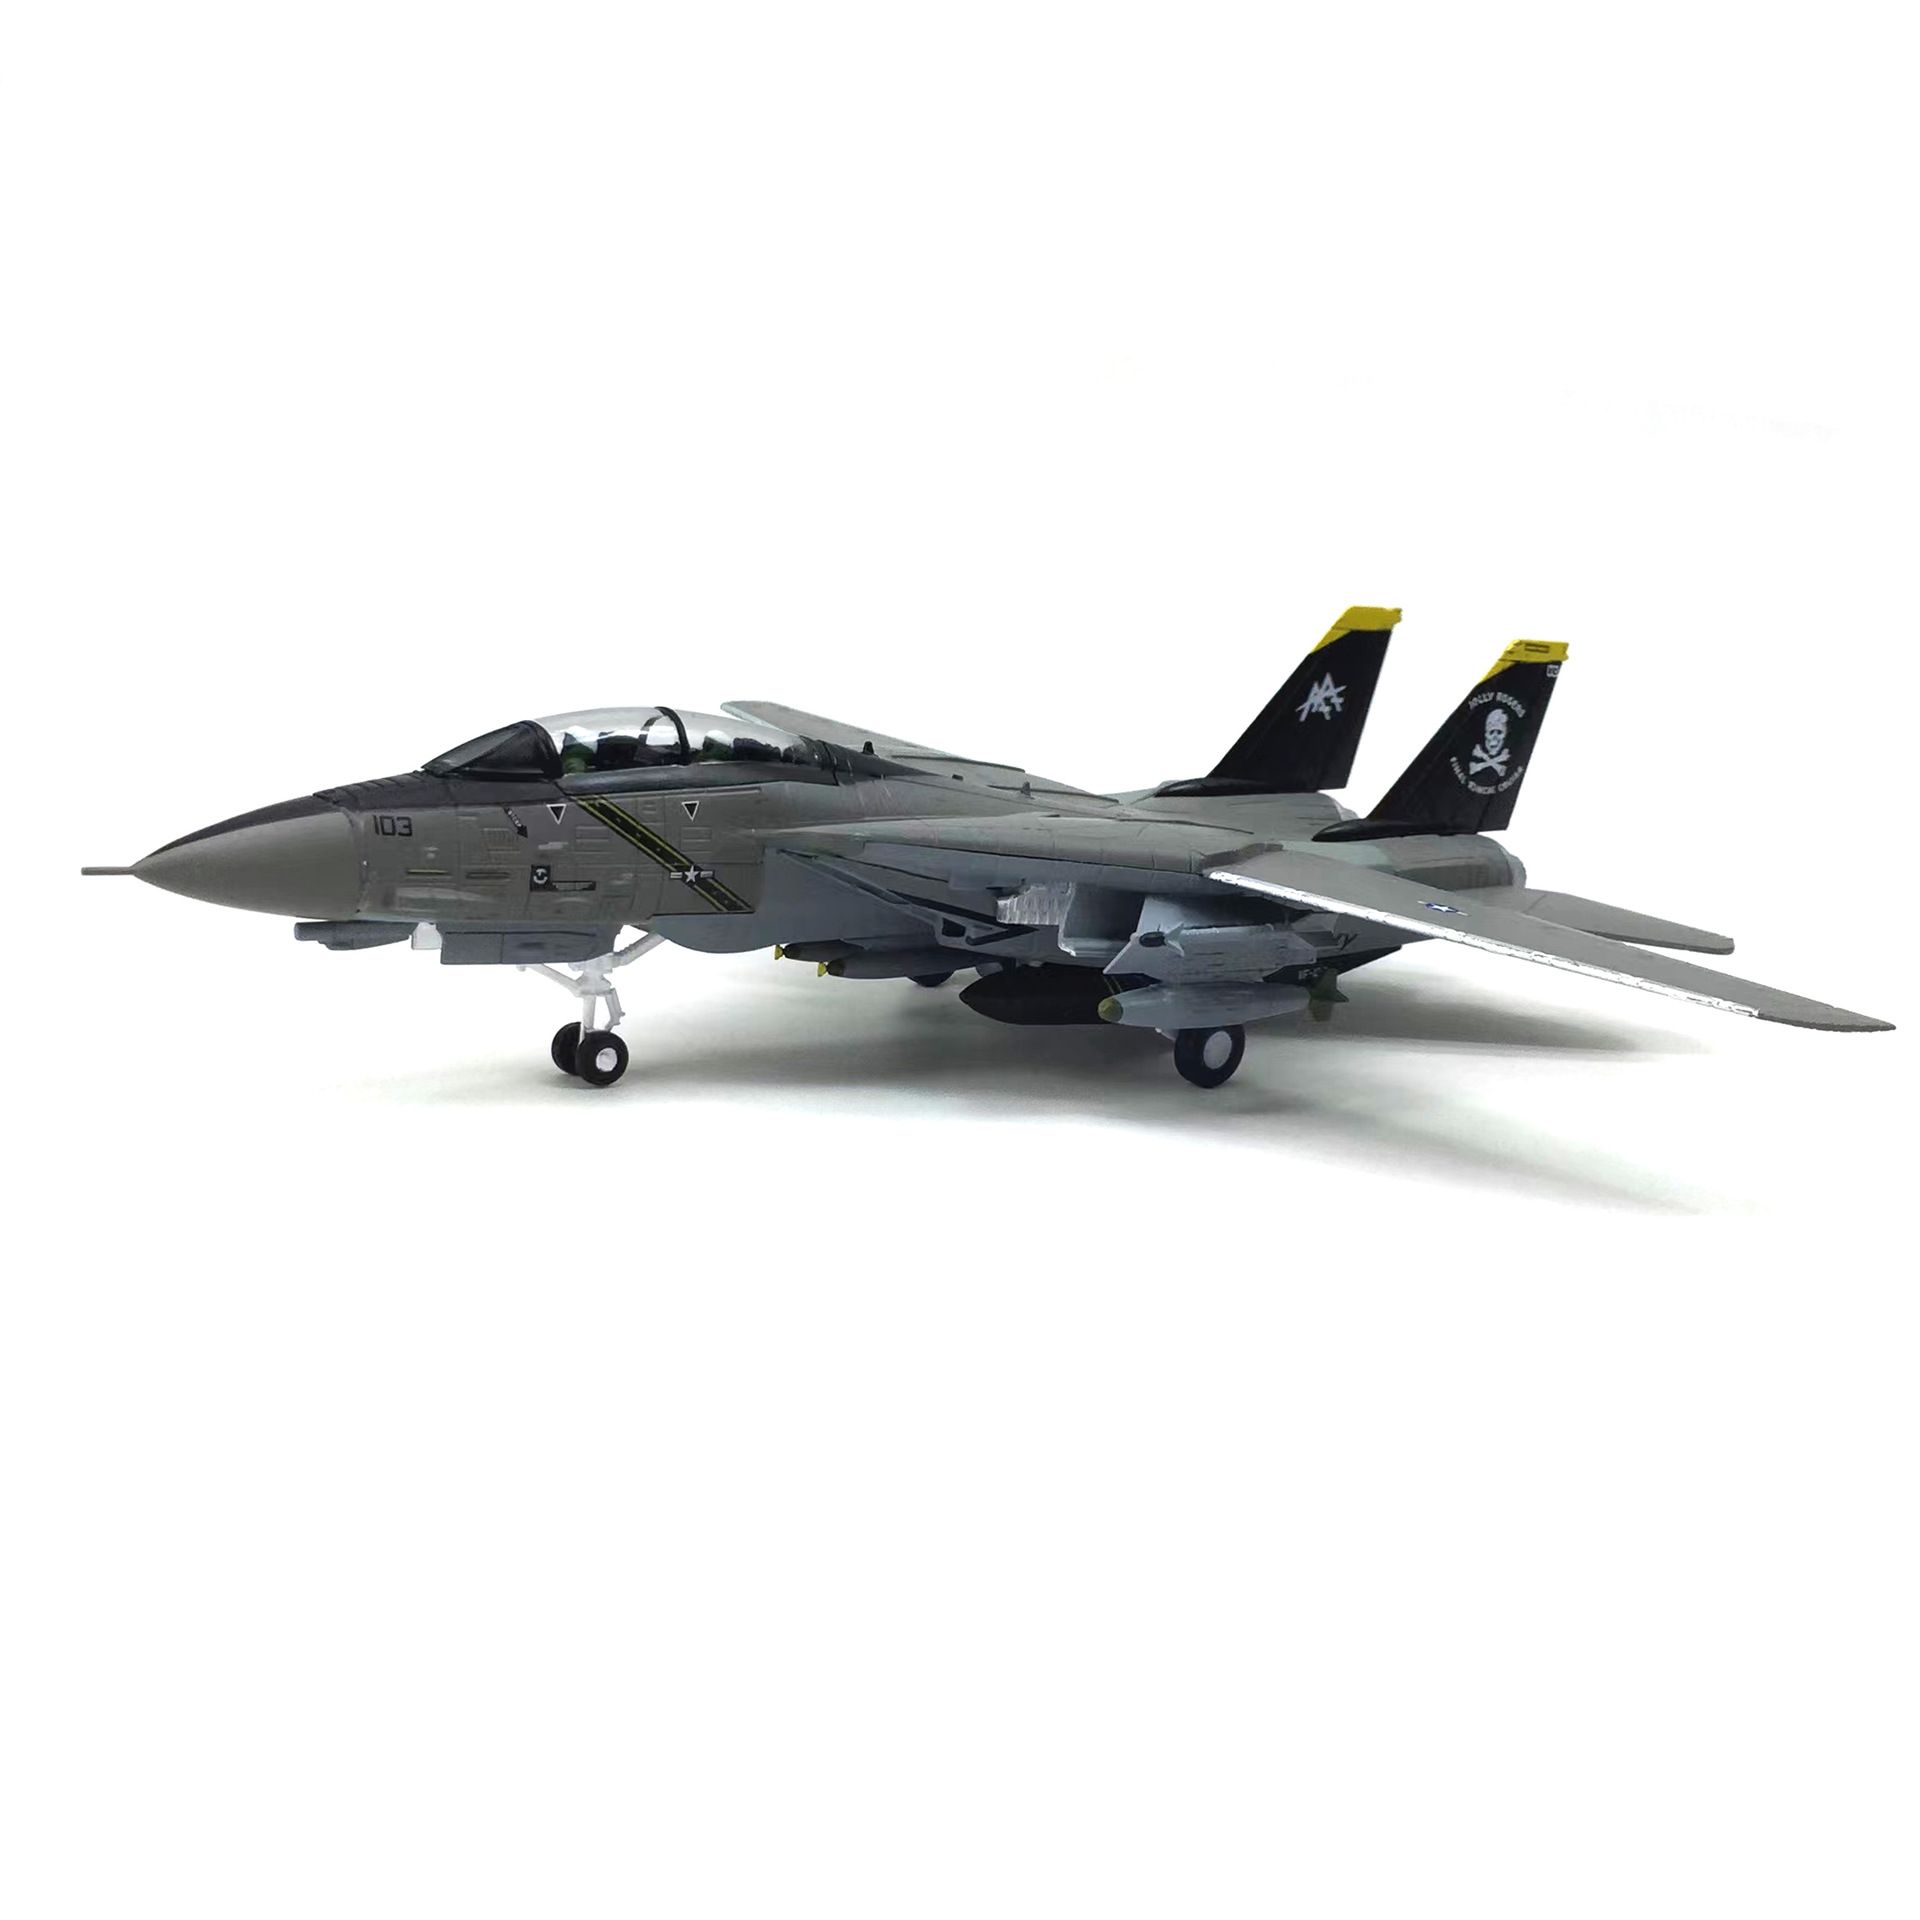  Mô hình máy bay chiến đấu USA Grumman F14a Tomcat 2003 tỉ lệ 1:100 Ns models MBQS002 